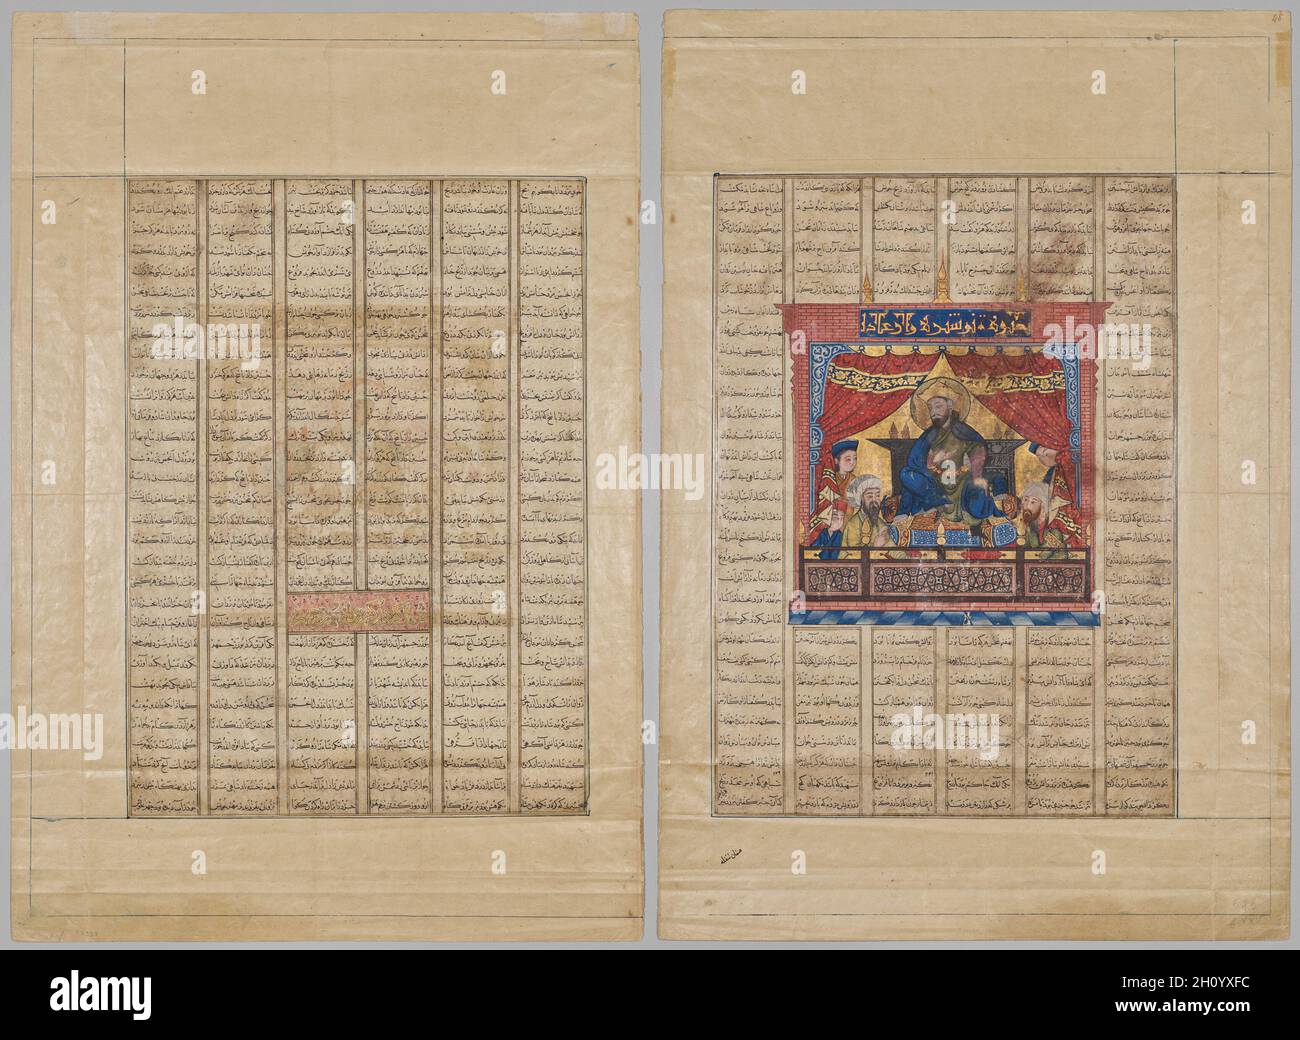 Versi persiani: Il quarantesimo anno del Regno di re Kisra Nushirwan e la Storia di Buzurgmihr (recto); Ritratto di Nushirwan il giusto (verso) da uno Shahnama (Libro dei Re) di Firdausi (940–1019 o 1025), 1330-35. Iran, Tabriz, Ilkhanid periodo (1256-1353). Acquerello opaco, inchiostro e oro su carta; foglio: 59.3 x 40.2 cm (23 3/8 x 15 13/16 poll.). L'interesse di Mongol nella produzione di manoscritti illustrati si è infine focalizzato sulla poesia epica persiana. Lo Shahnama, una raccolta di epiche e racconti dei leggendari eroi iraniani, era una scelta naturale; il libro includeva molti soggetti che si adattavano a Mo Foto Stock